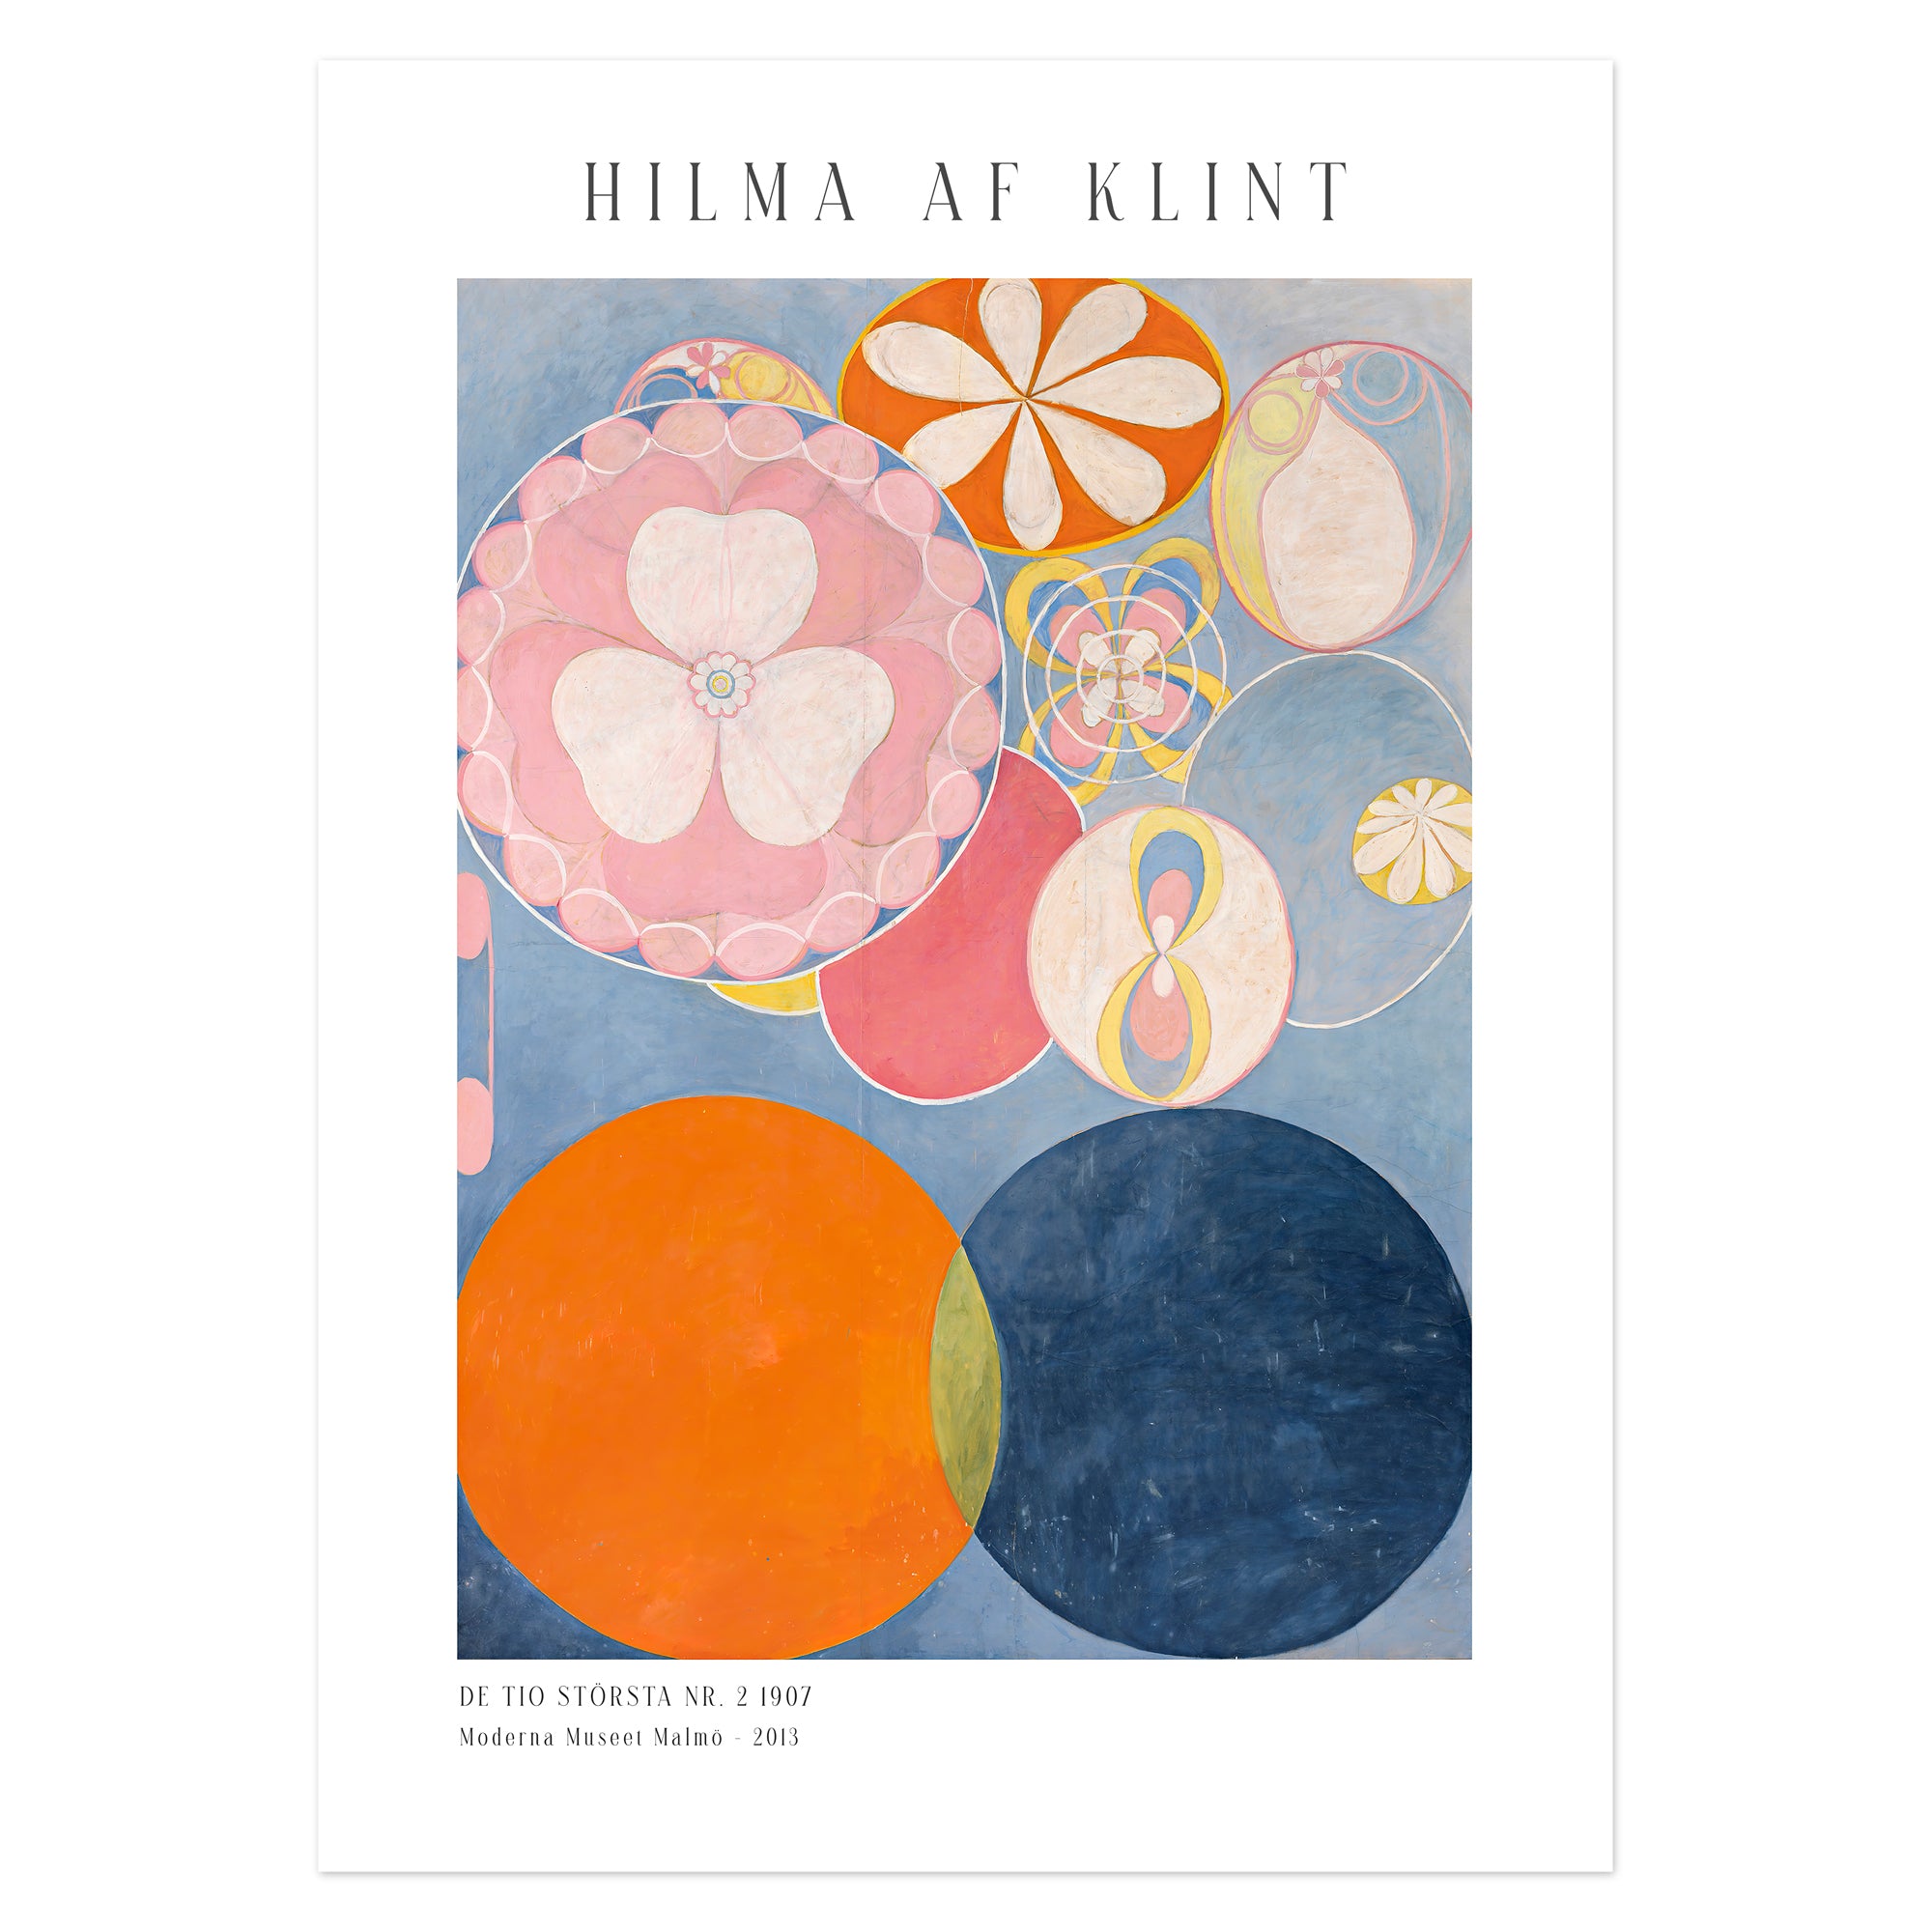 Hilma af Klint Poster - De tio största nr. 2